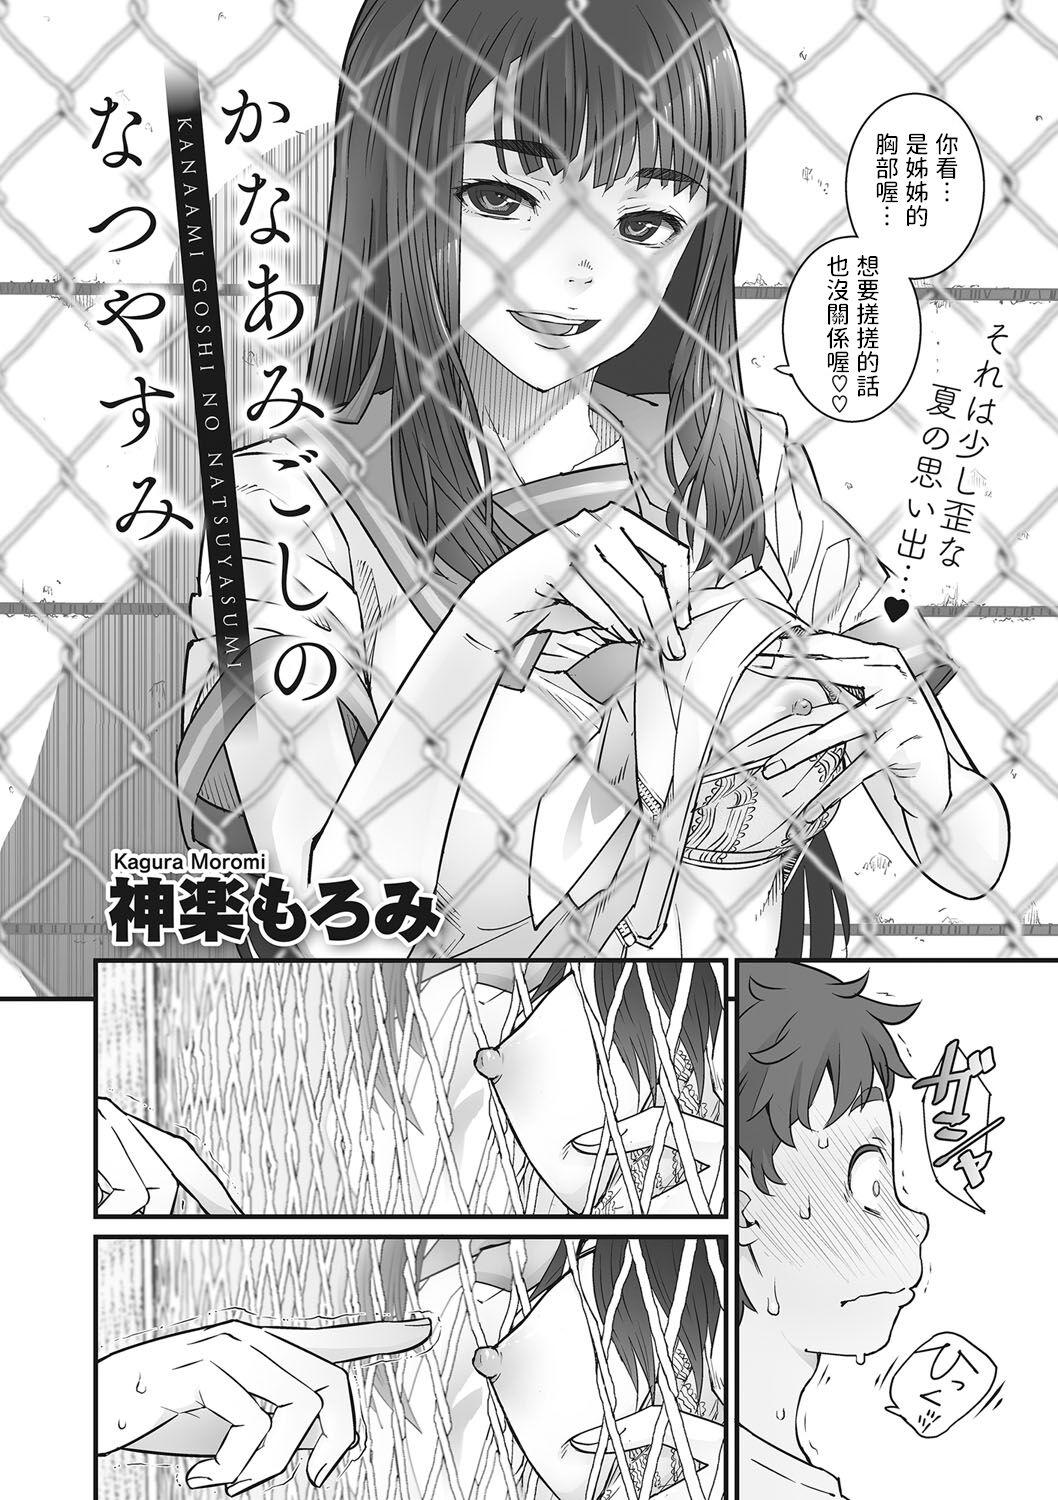 Leche Kanaami Goshi no Natsuyasumi Tinder - Page 2